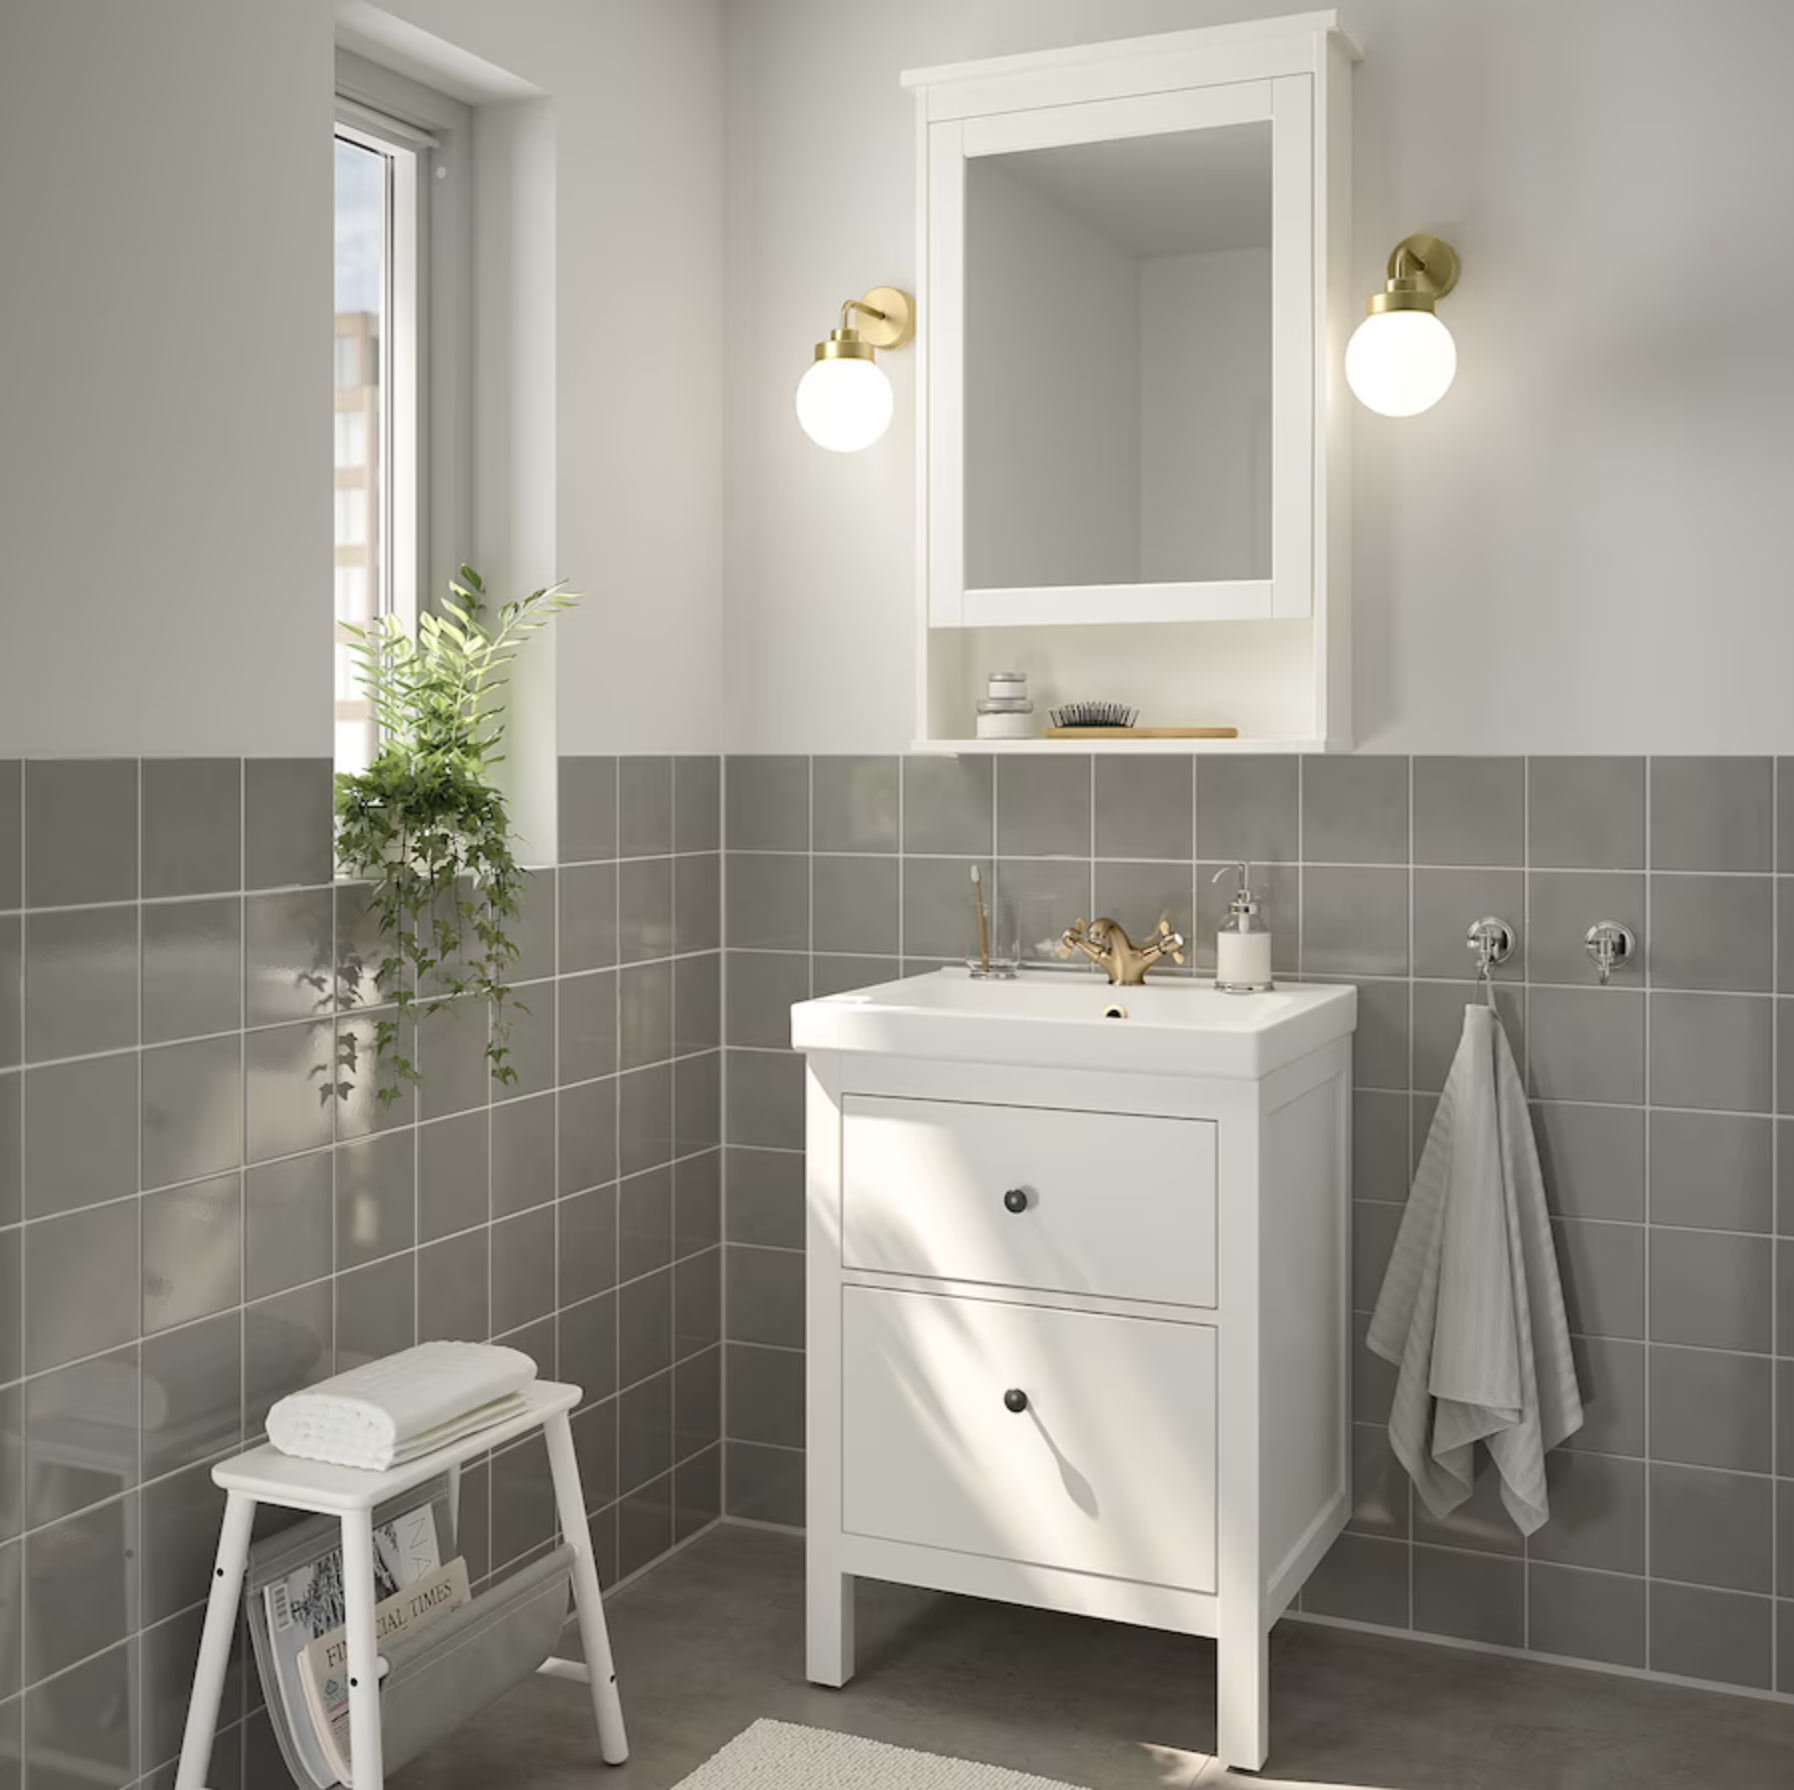 Baño pequeño con mueble de baño blanco y grifo dorado HEMNES y ODENSVIK de IKEA.